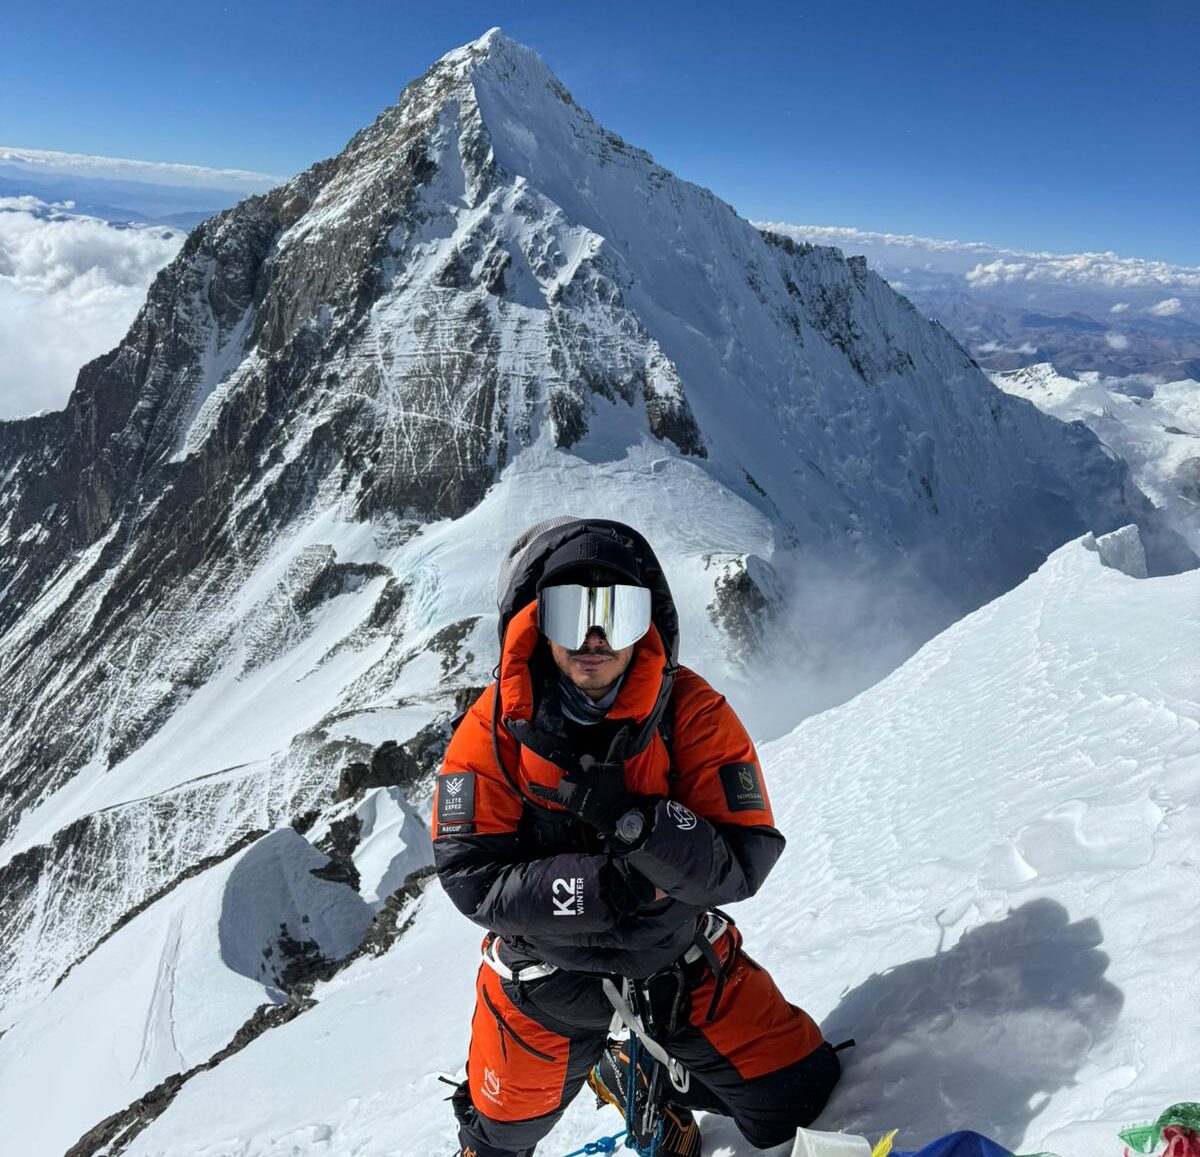 Nirmal Purja on the summit of Lhotse, Everest behind him